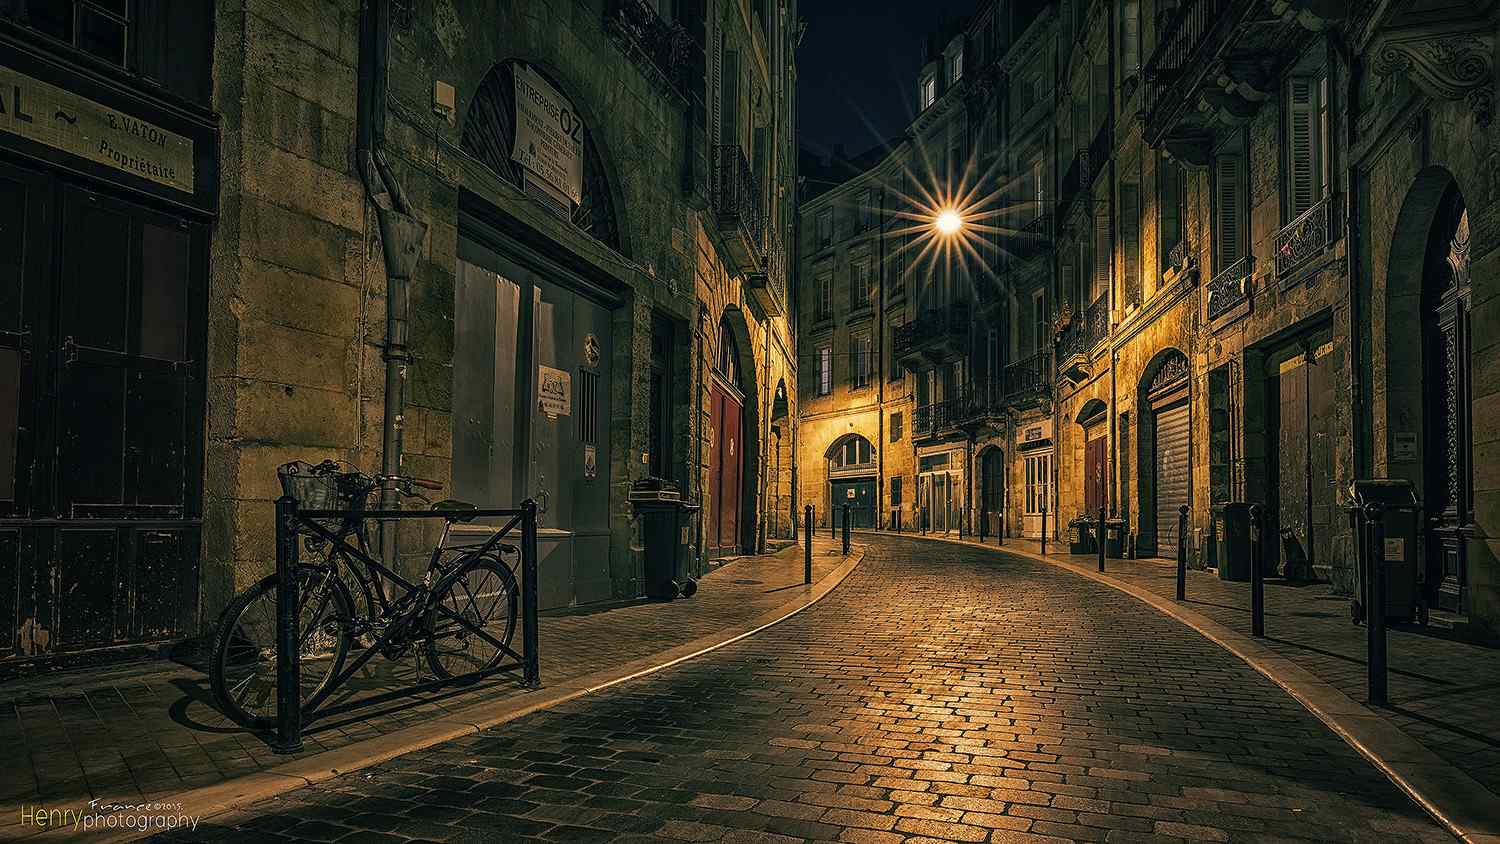 法国巴黎文艺城市夜景桌面壁纸